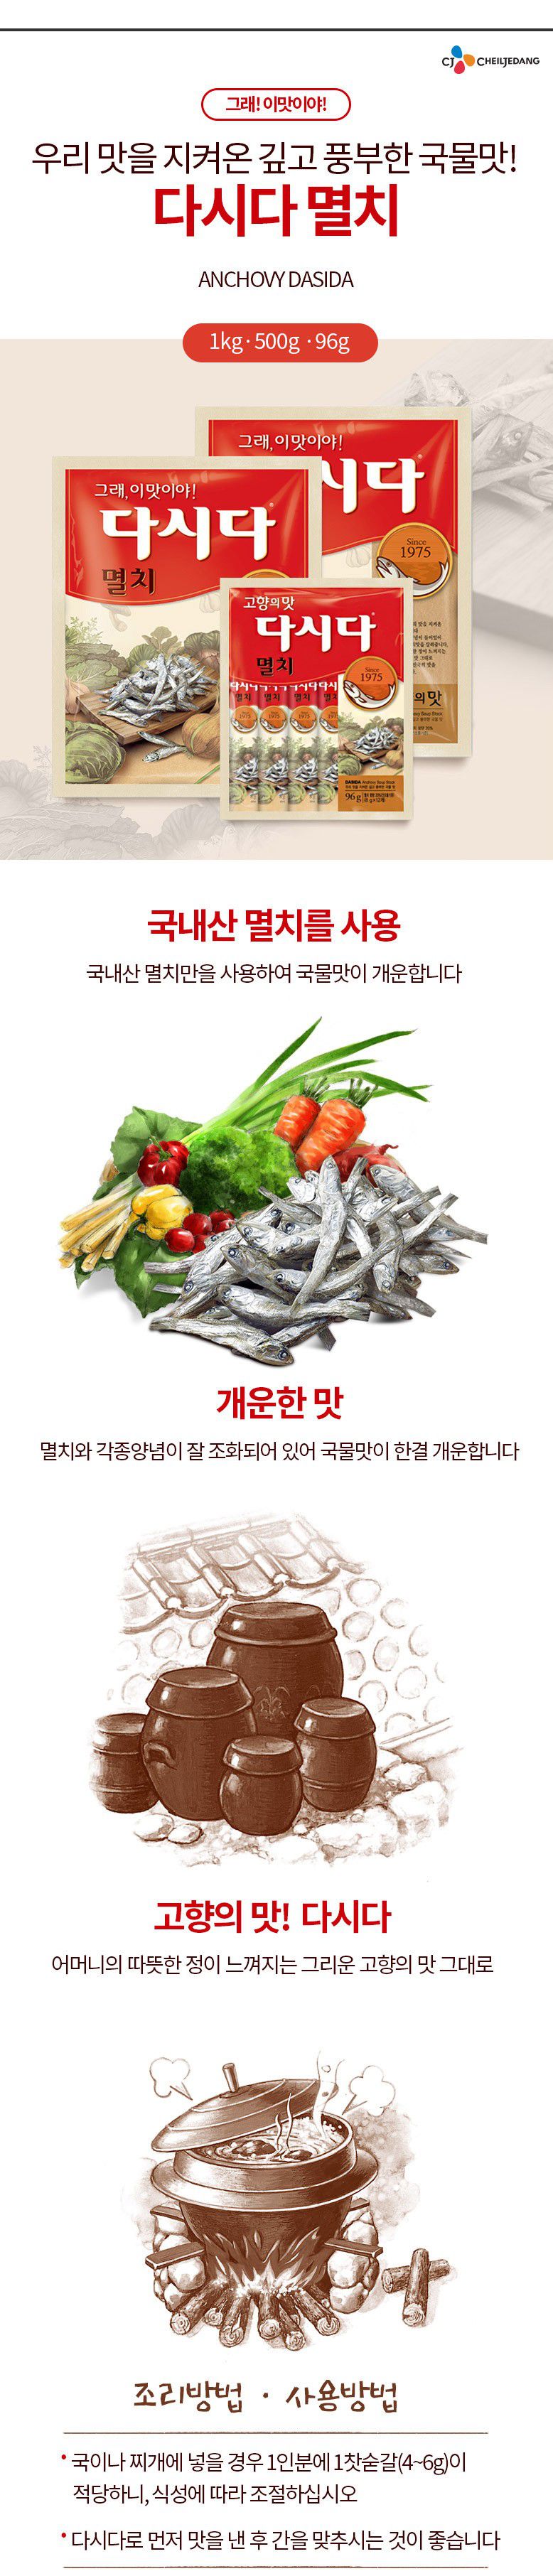 韓國食品-[CJ] 다시다[멸치] 1kg